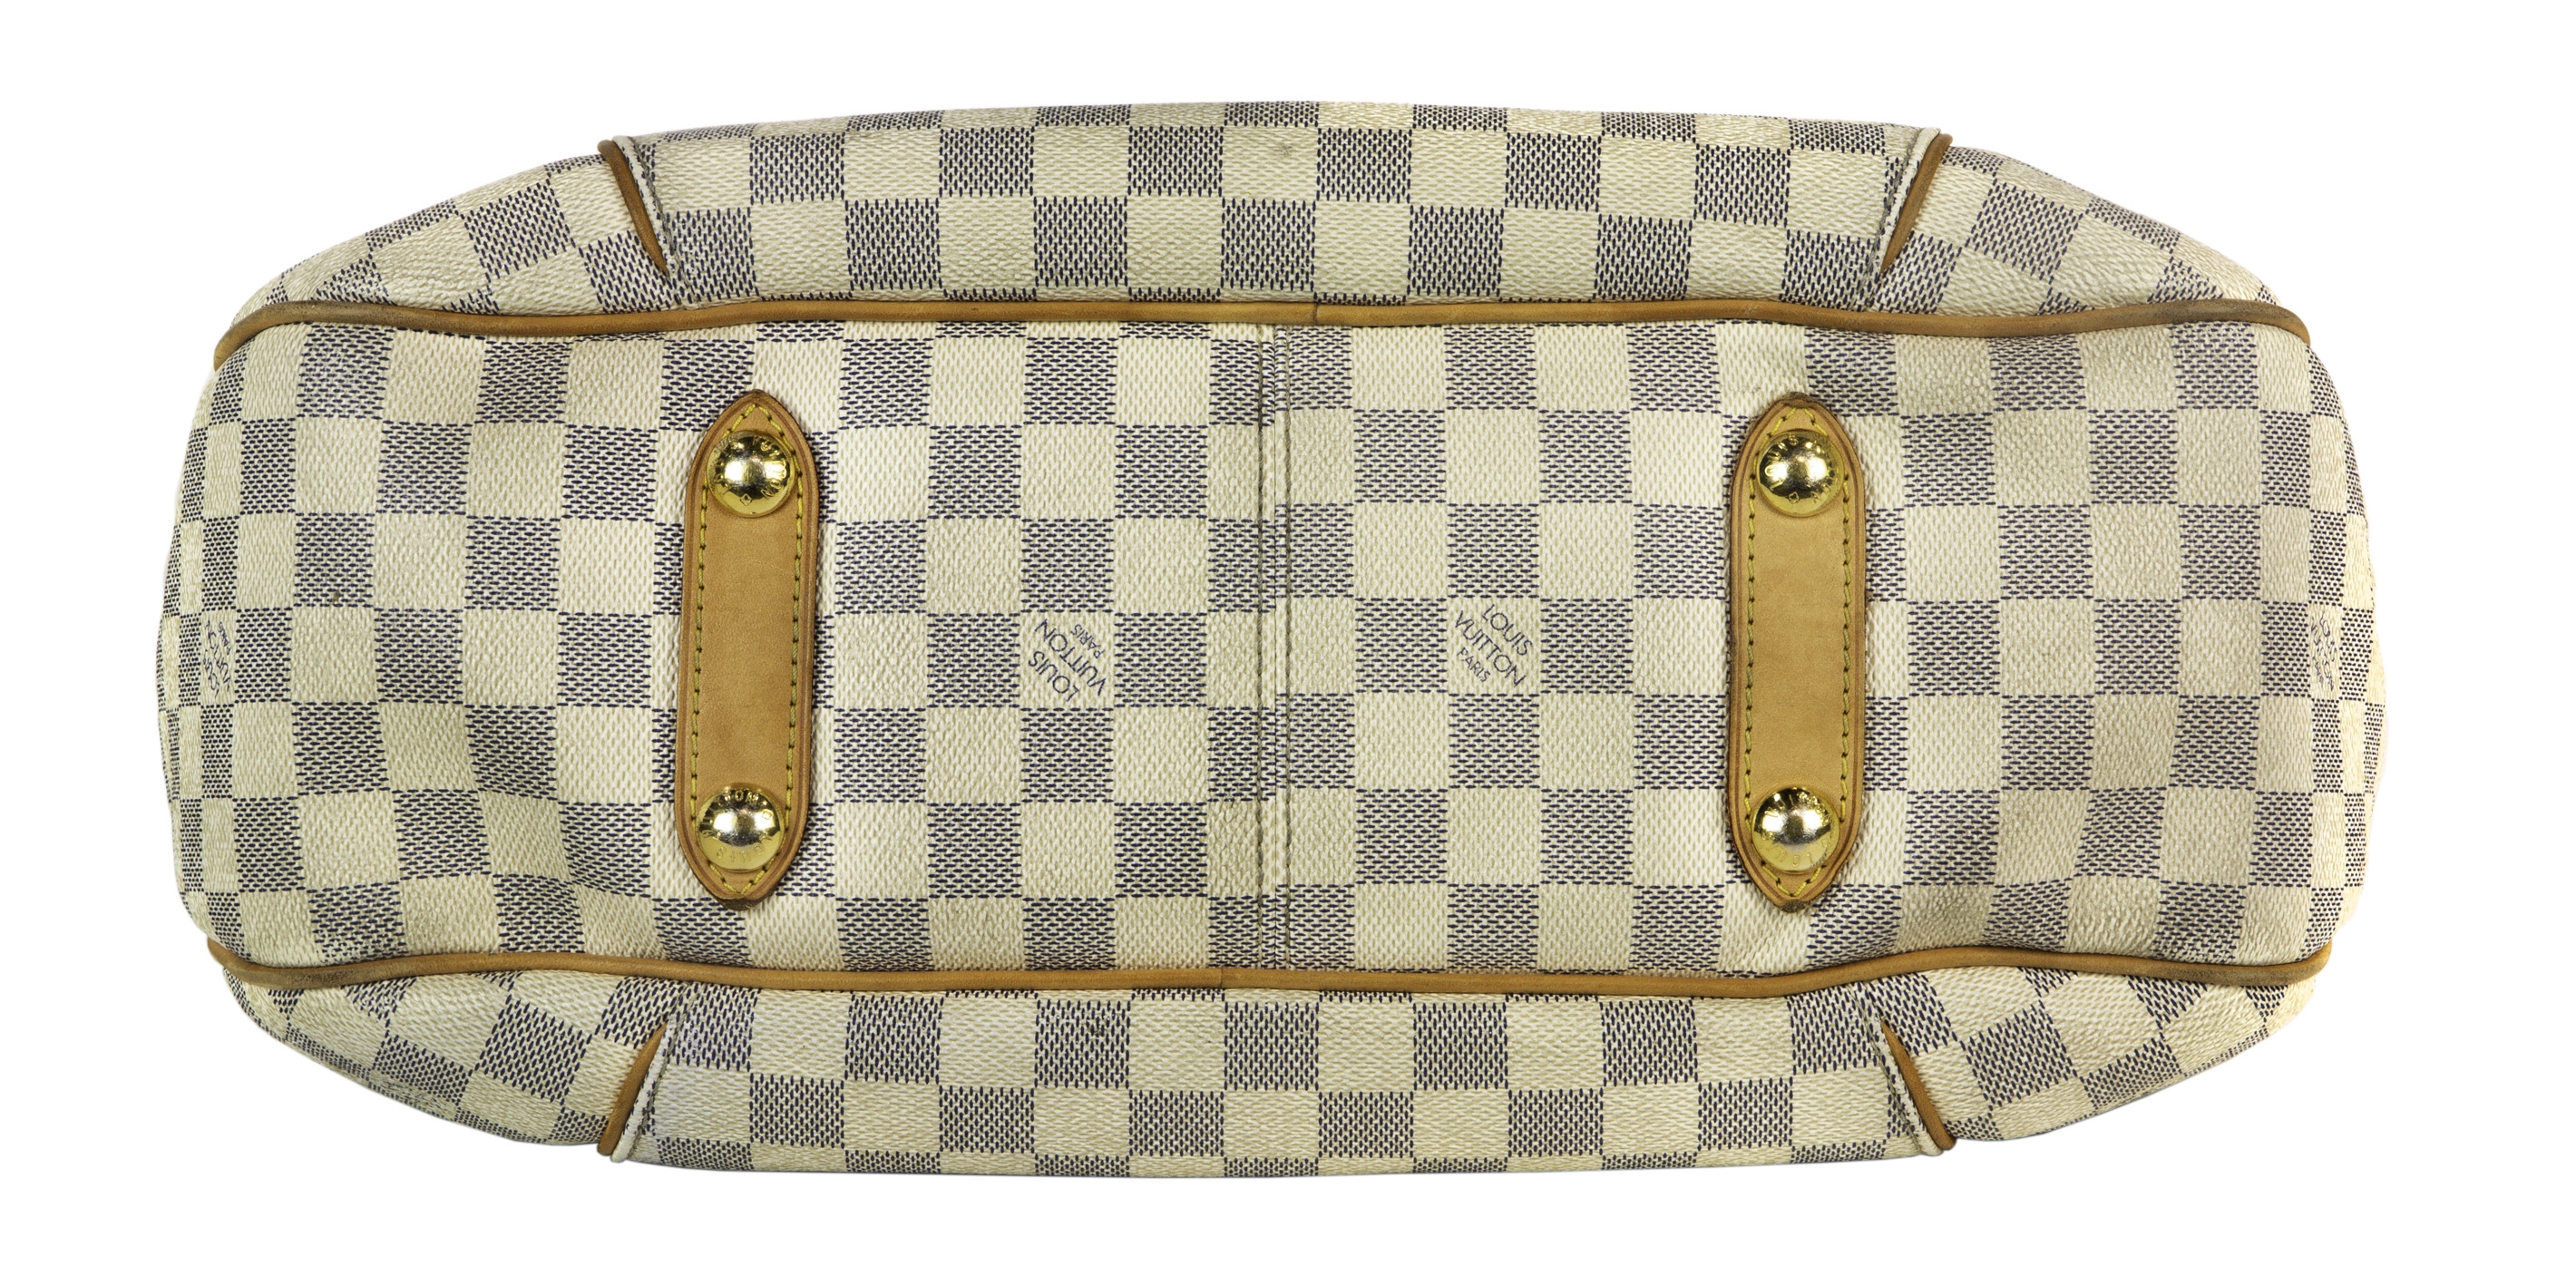 Sold at Auction: Louis Vuitton, Louis Vuitton - New - Damier Azur